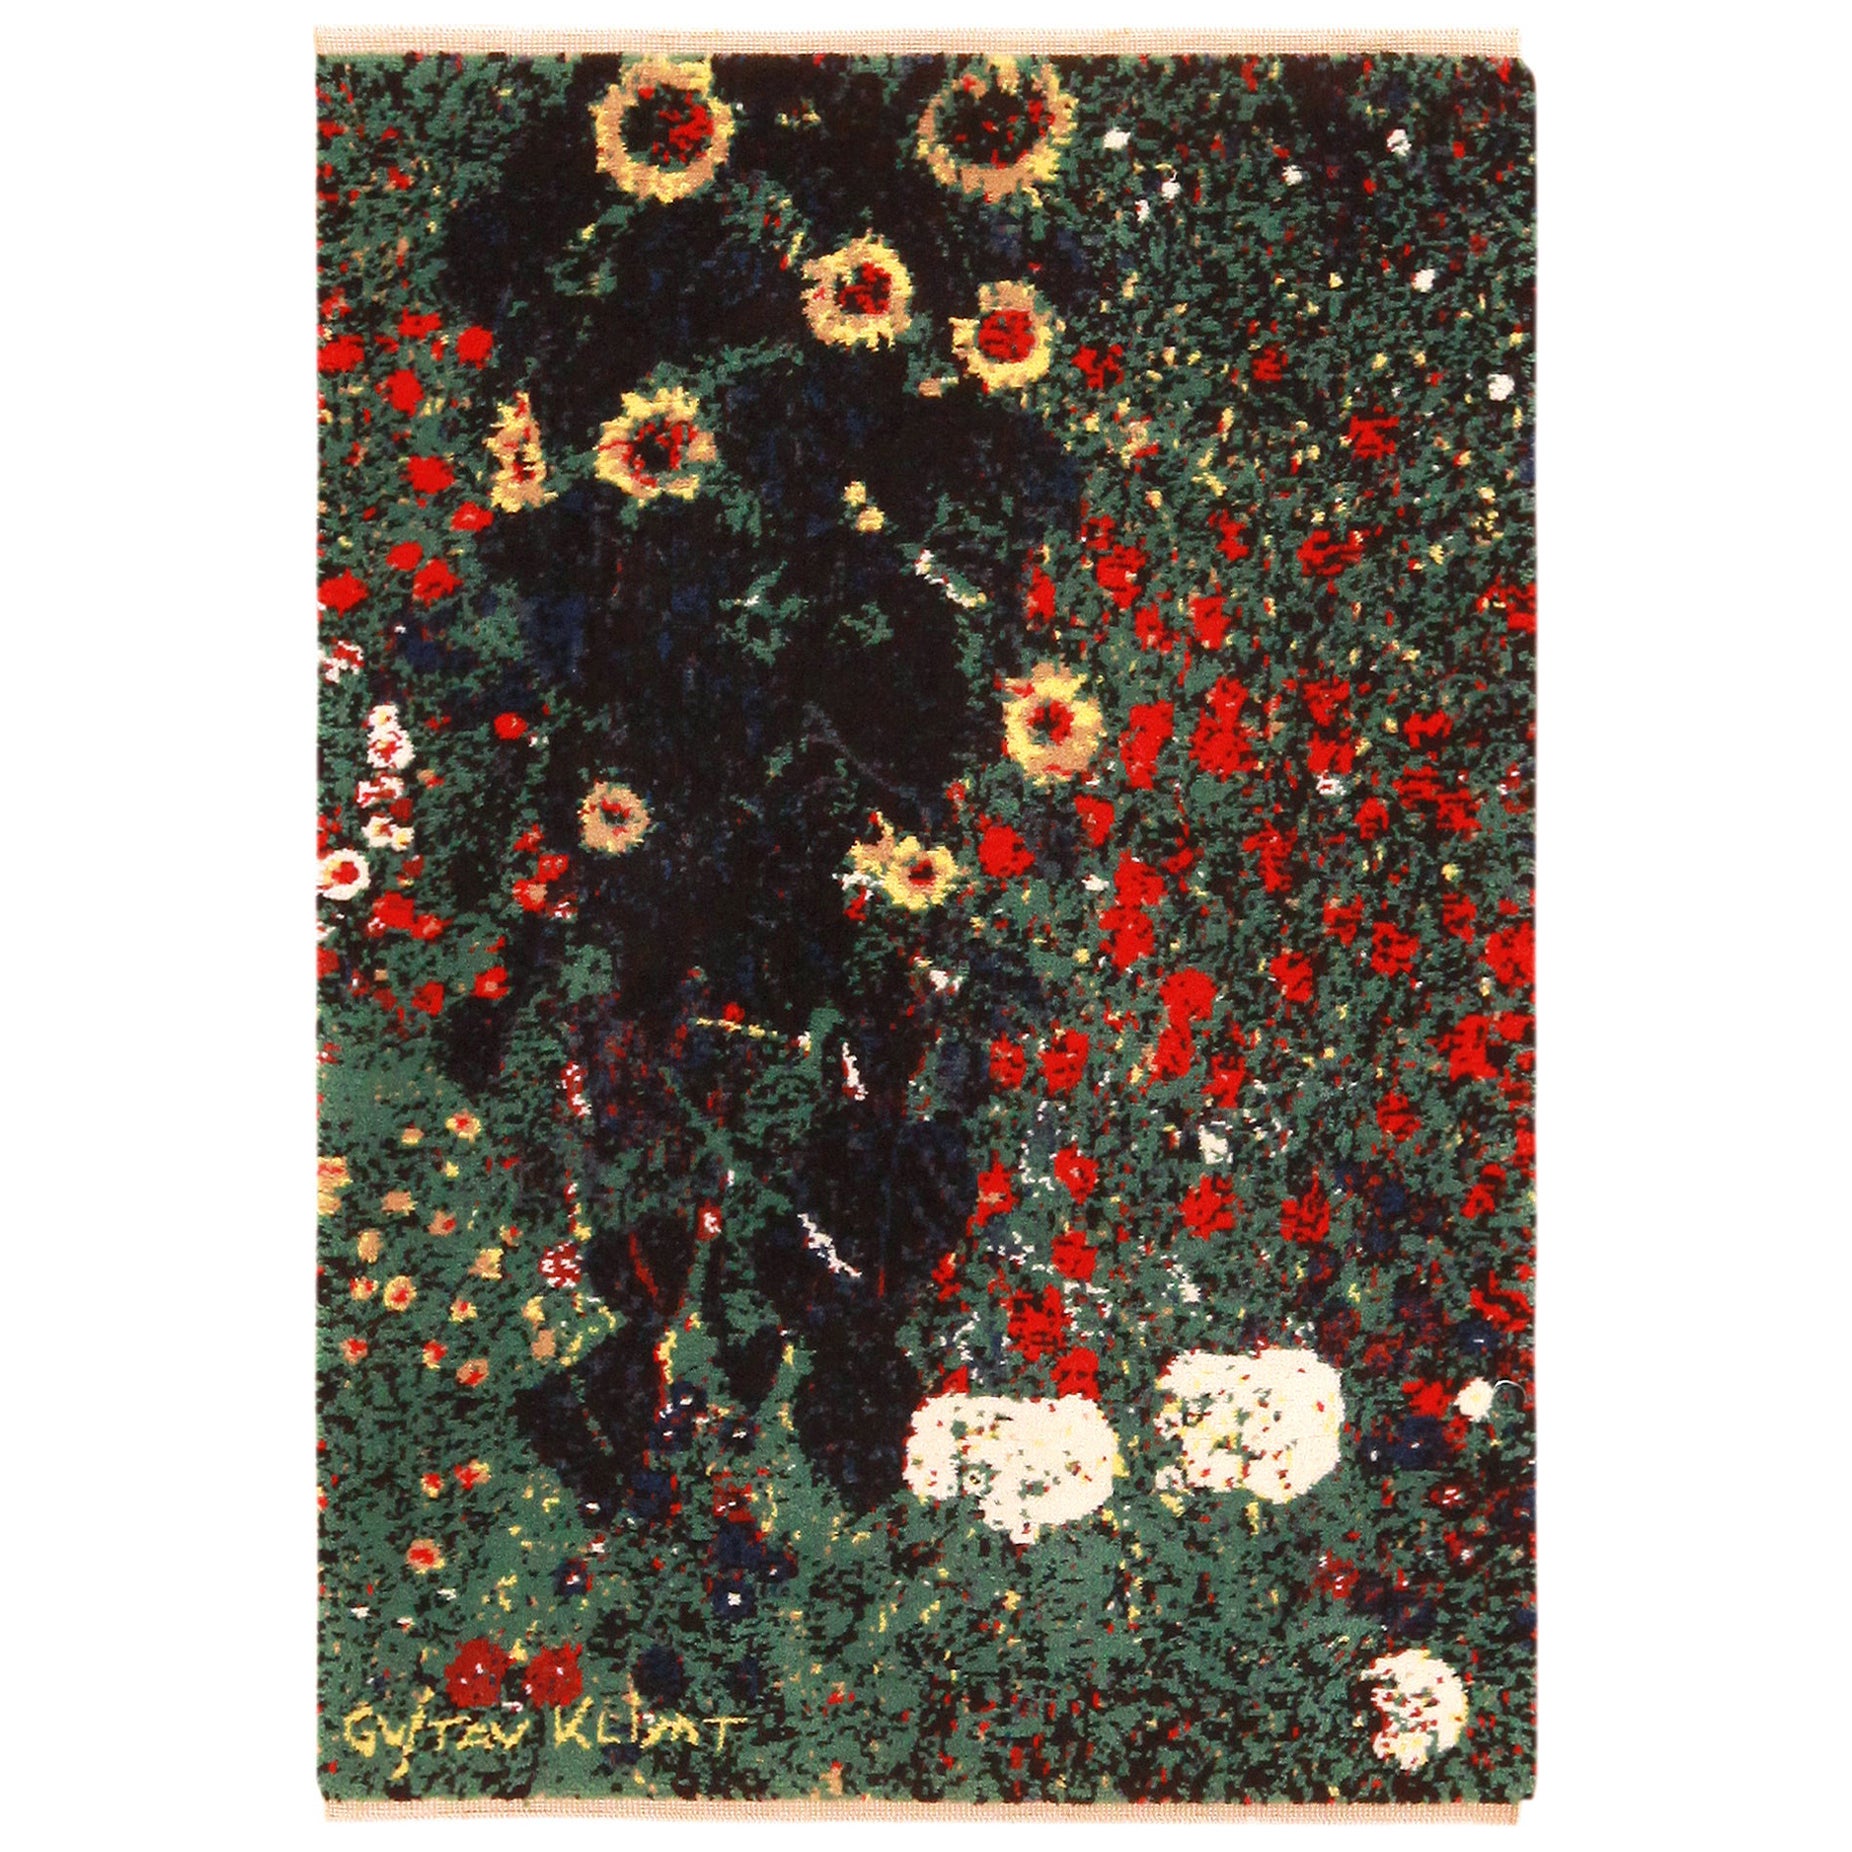 Skandinavischer Gustav Klimt-Teppich im Vintage-Stil.2 ft 8 in x 3 ft 11 in